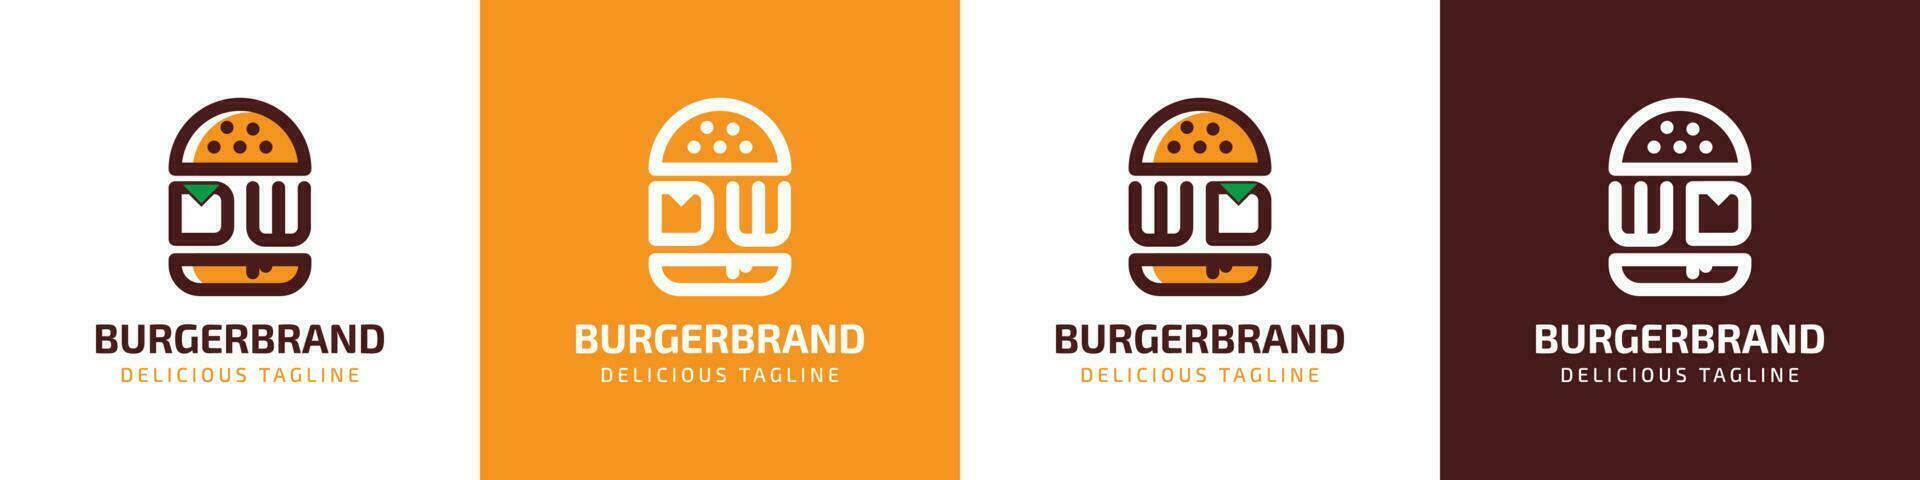 letra dw y wd hamburguesa logo, adecuado para ninguna negocio relacionado a hamburguesa con dw o wd iniciales. vector